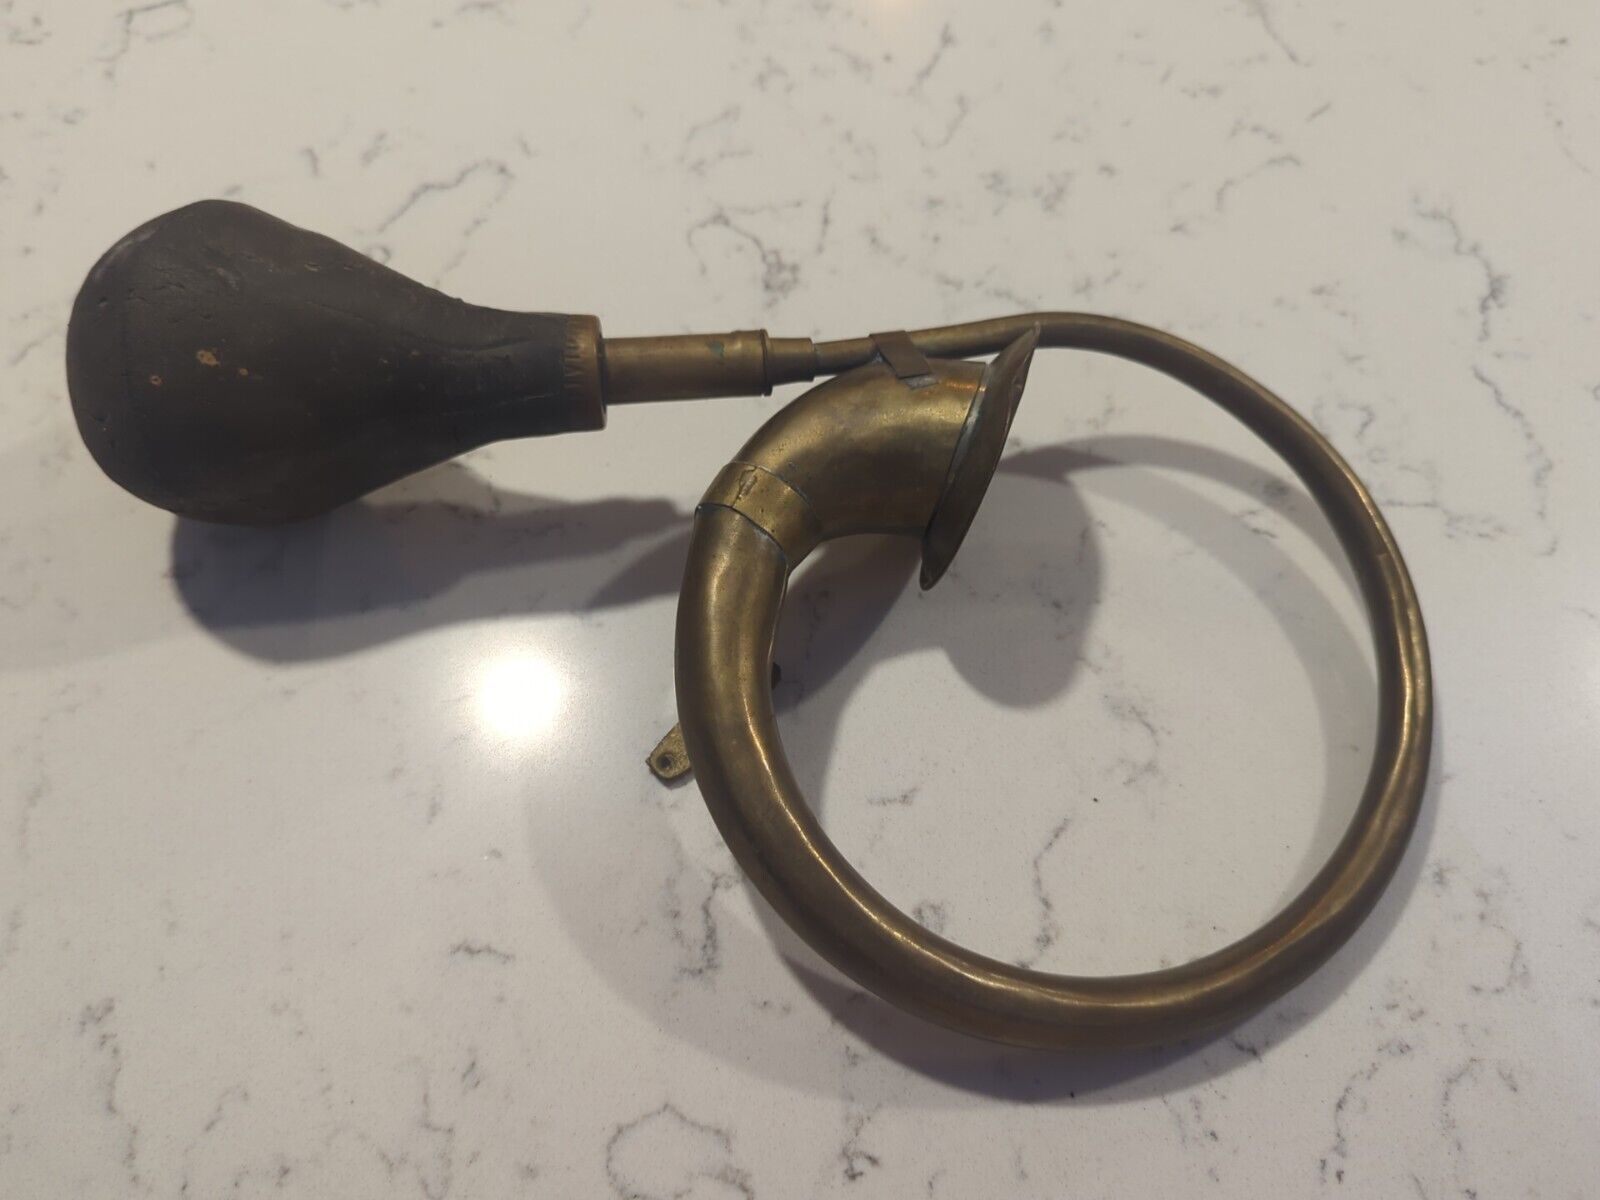 Vintage Antique Brass Rubber Squeeze Bulb Car Horn Model T 1920s